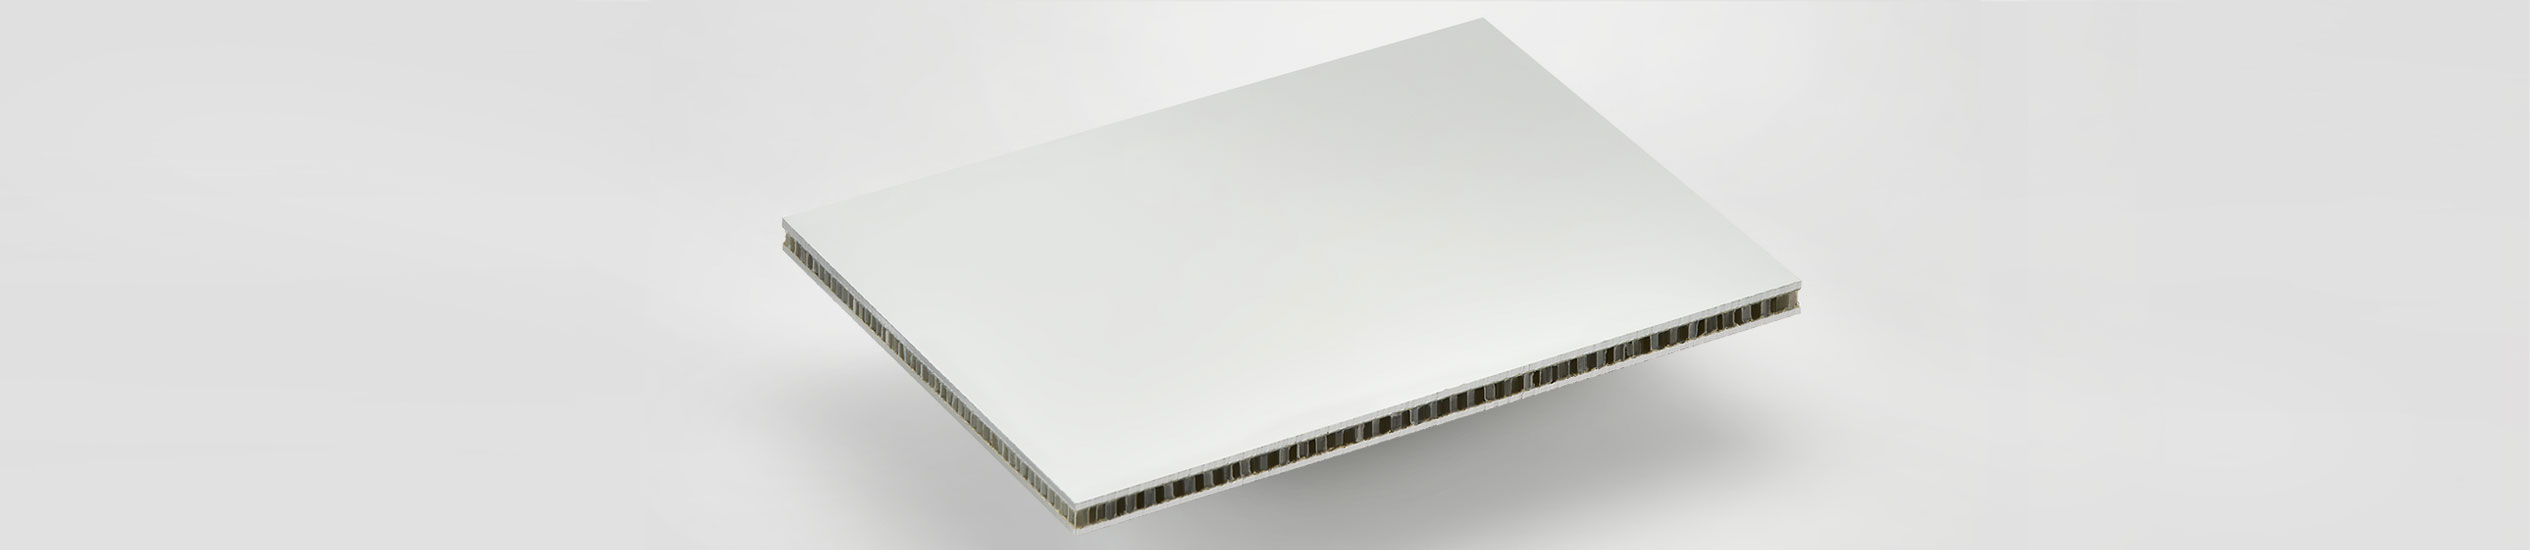 Pannelli sandwich, compositi in alluminio e polipropilene alveolare: per pavimenti, interiors e arredamento